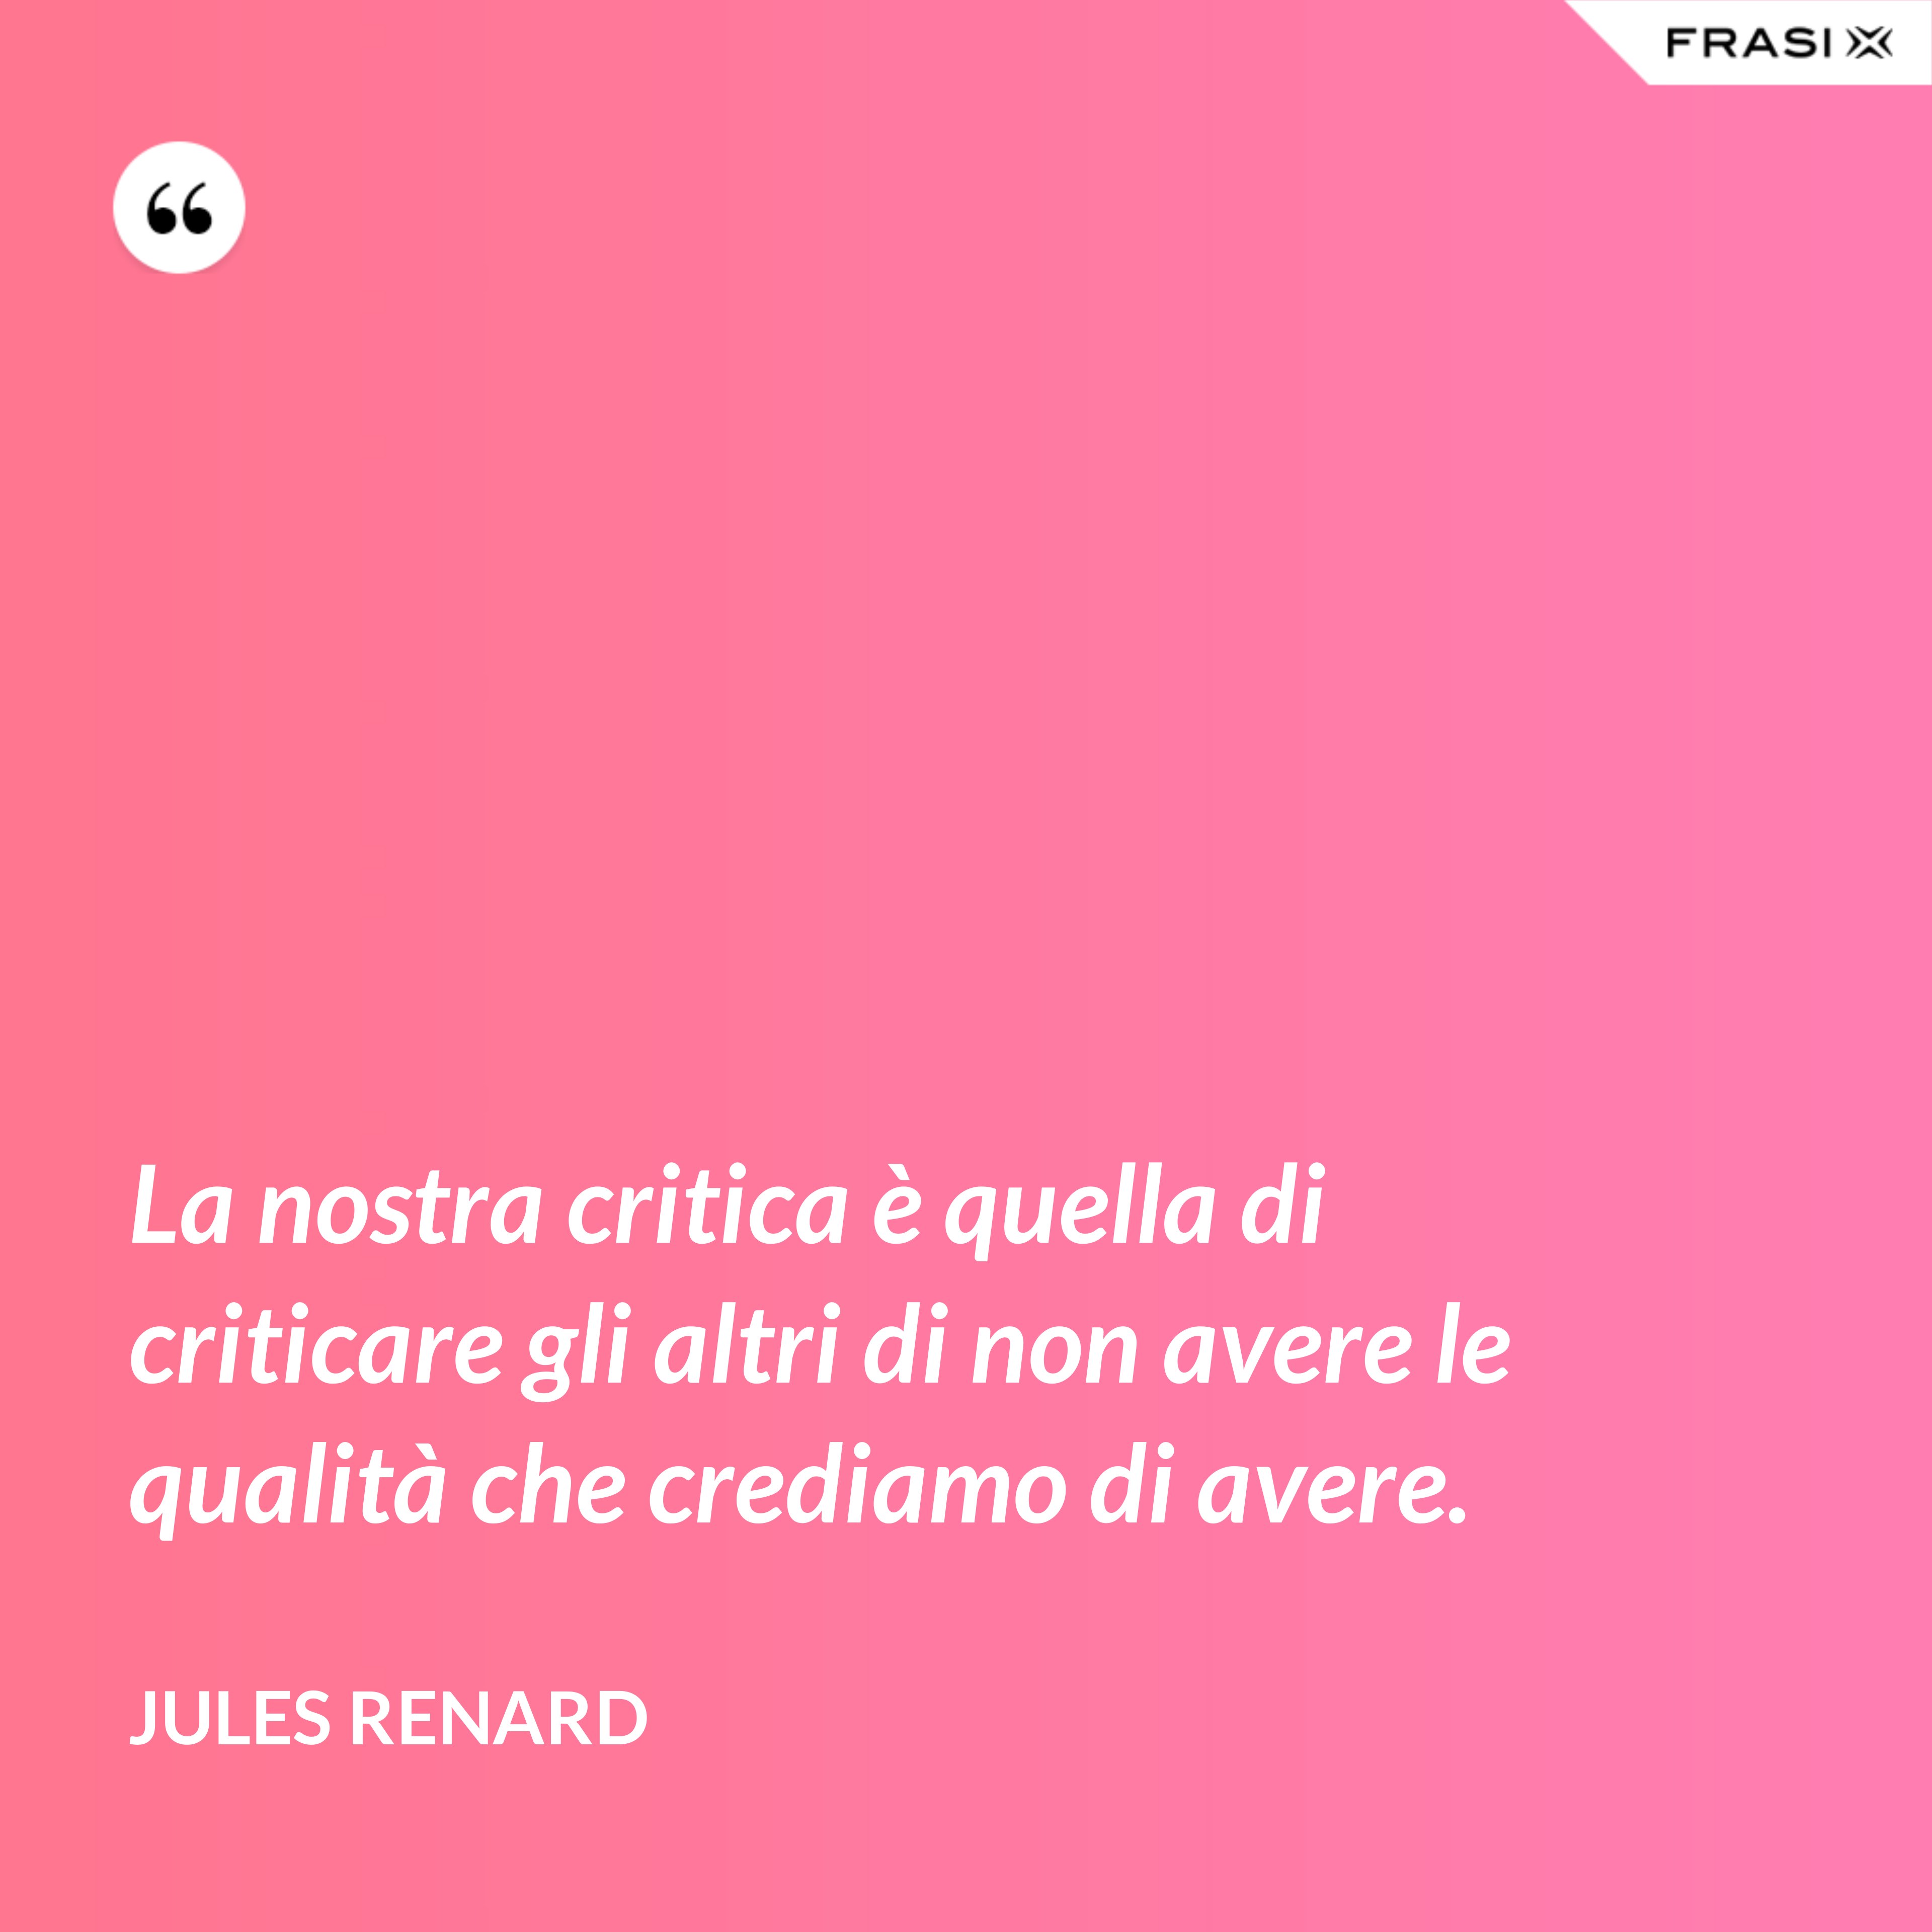 La nostra critica è quella di criticare gli altri di non avere le qualità che crediamo di avere. - Jules Renard